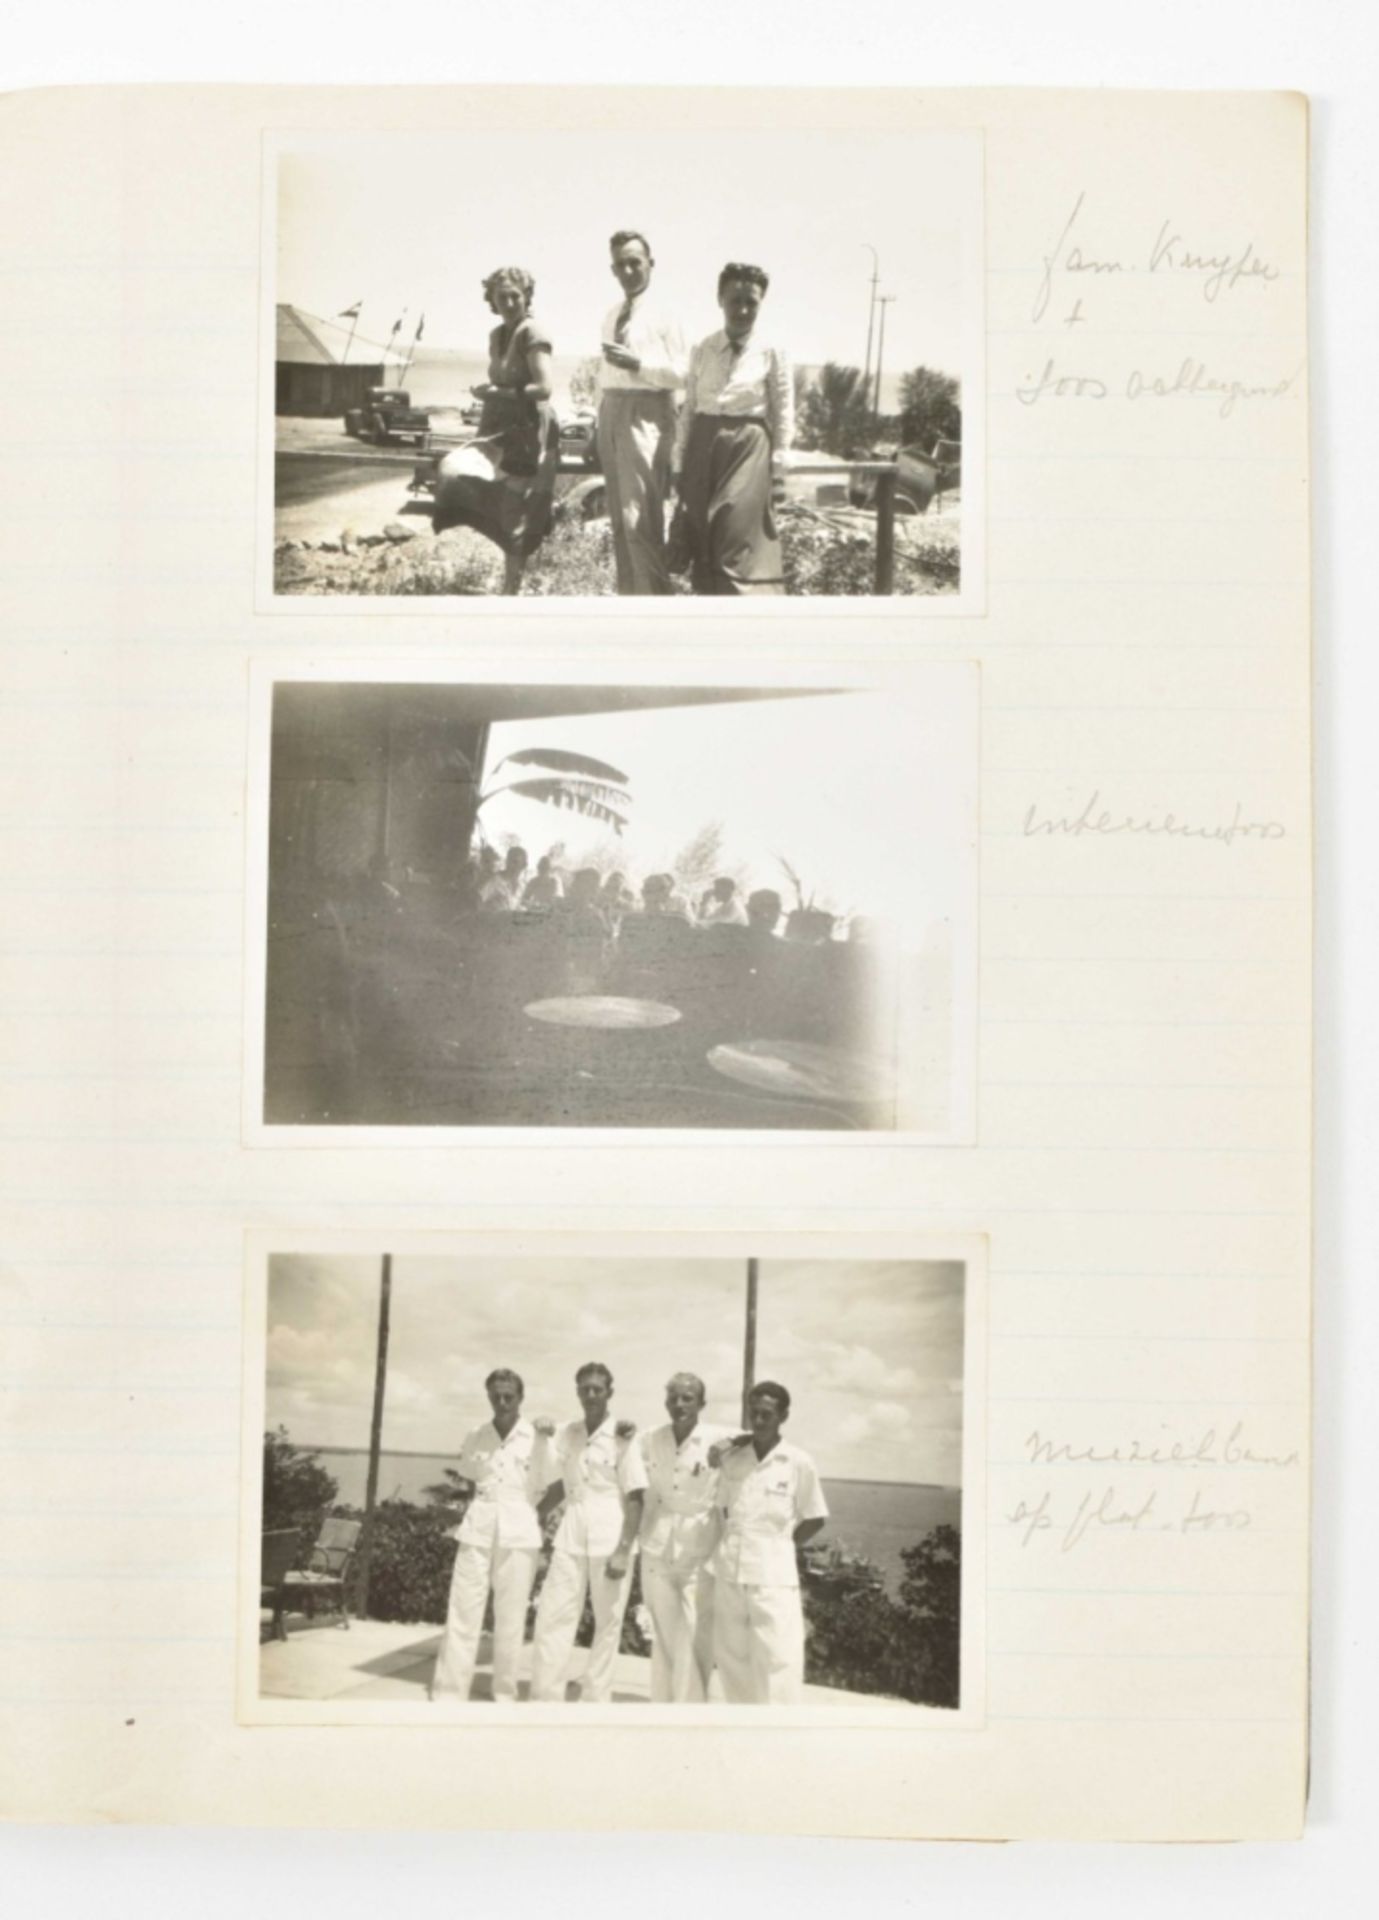 Archive of Antonius Hypolitus Fournier (1871-1913) and Akke Sietsma (1871-1942) - Bild 5 aus 10